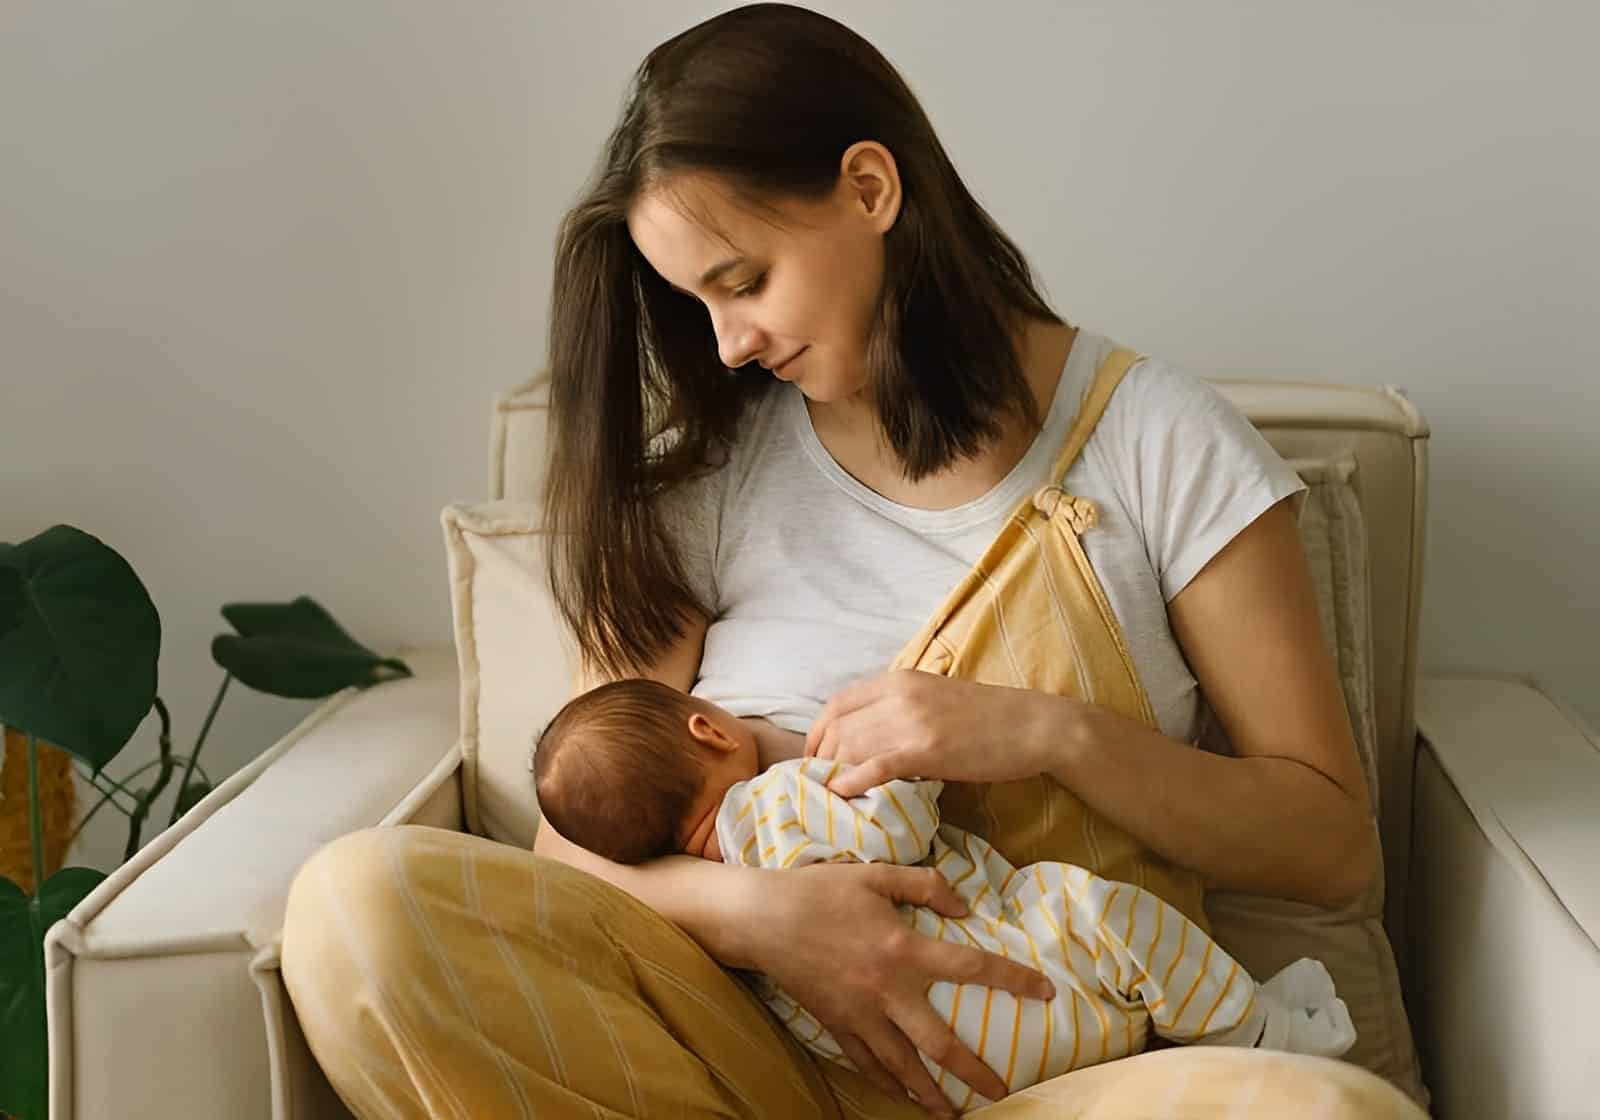 Mulher sentada amamentando um bebê